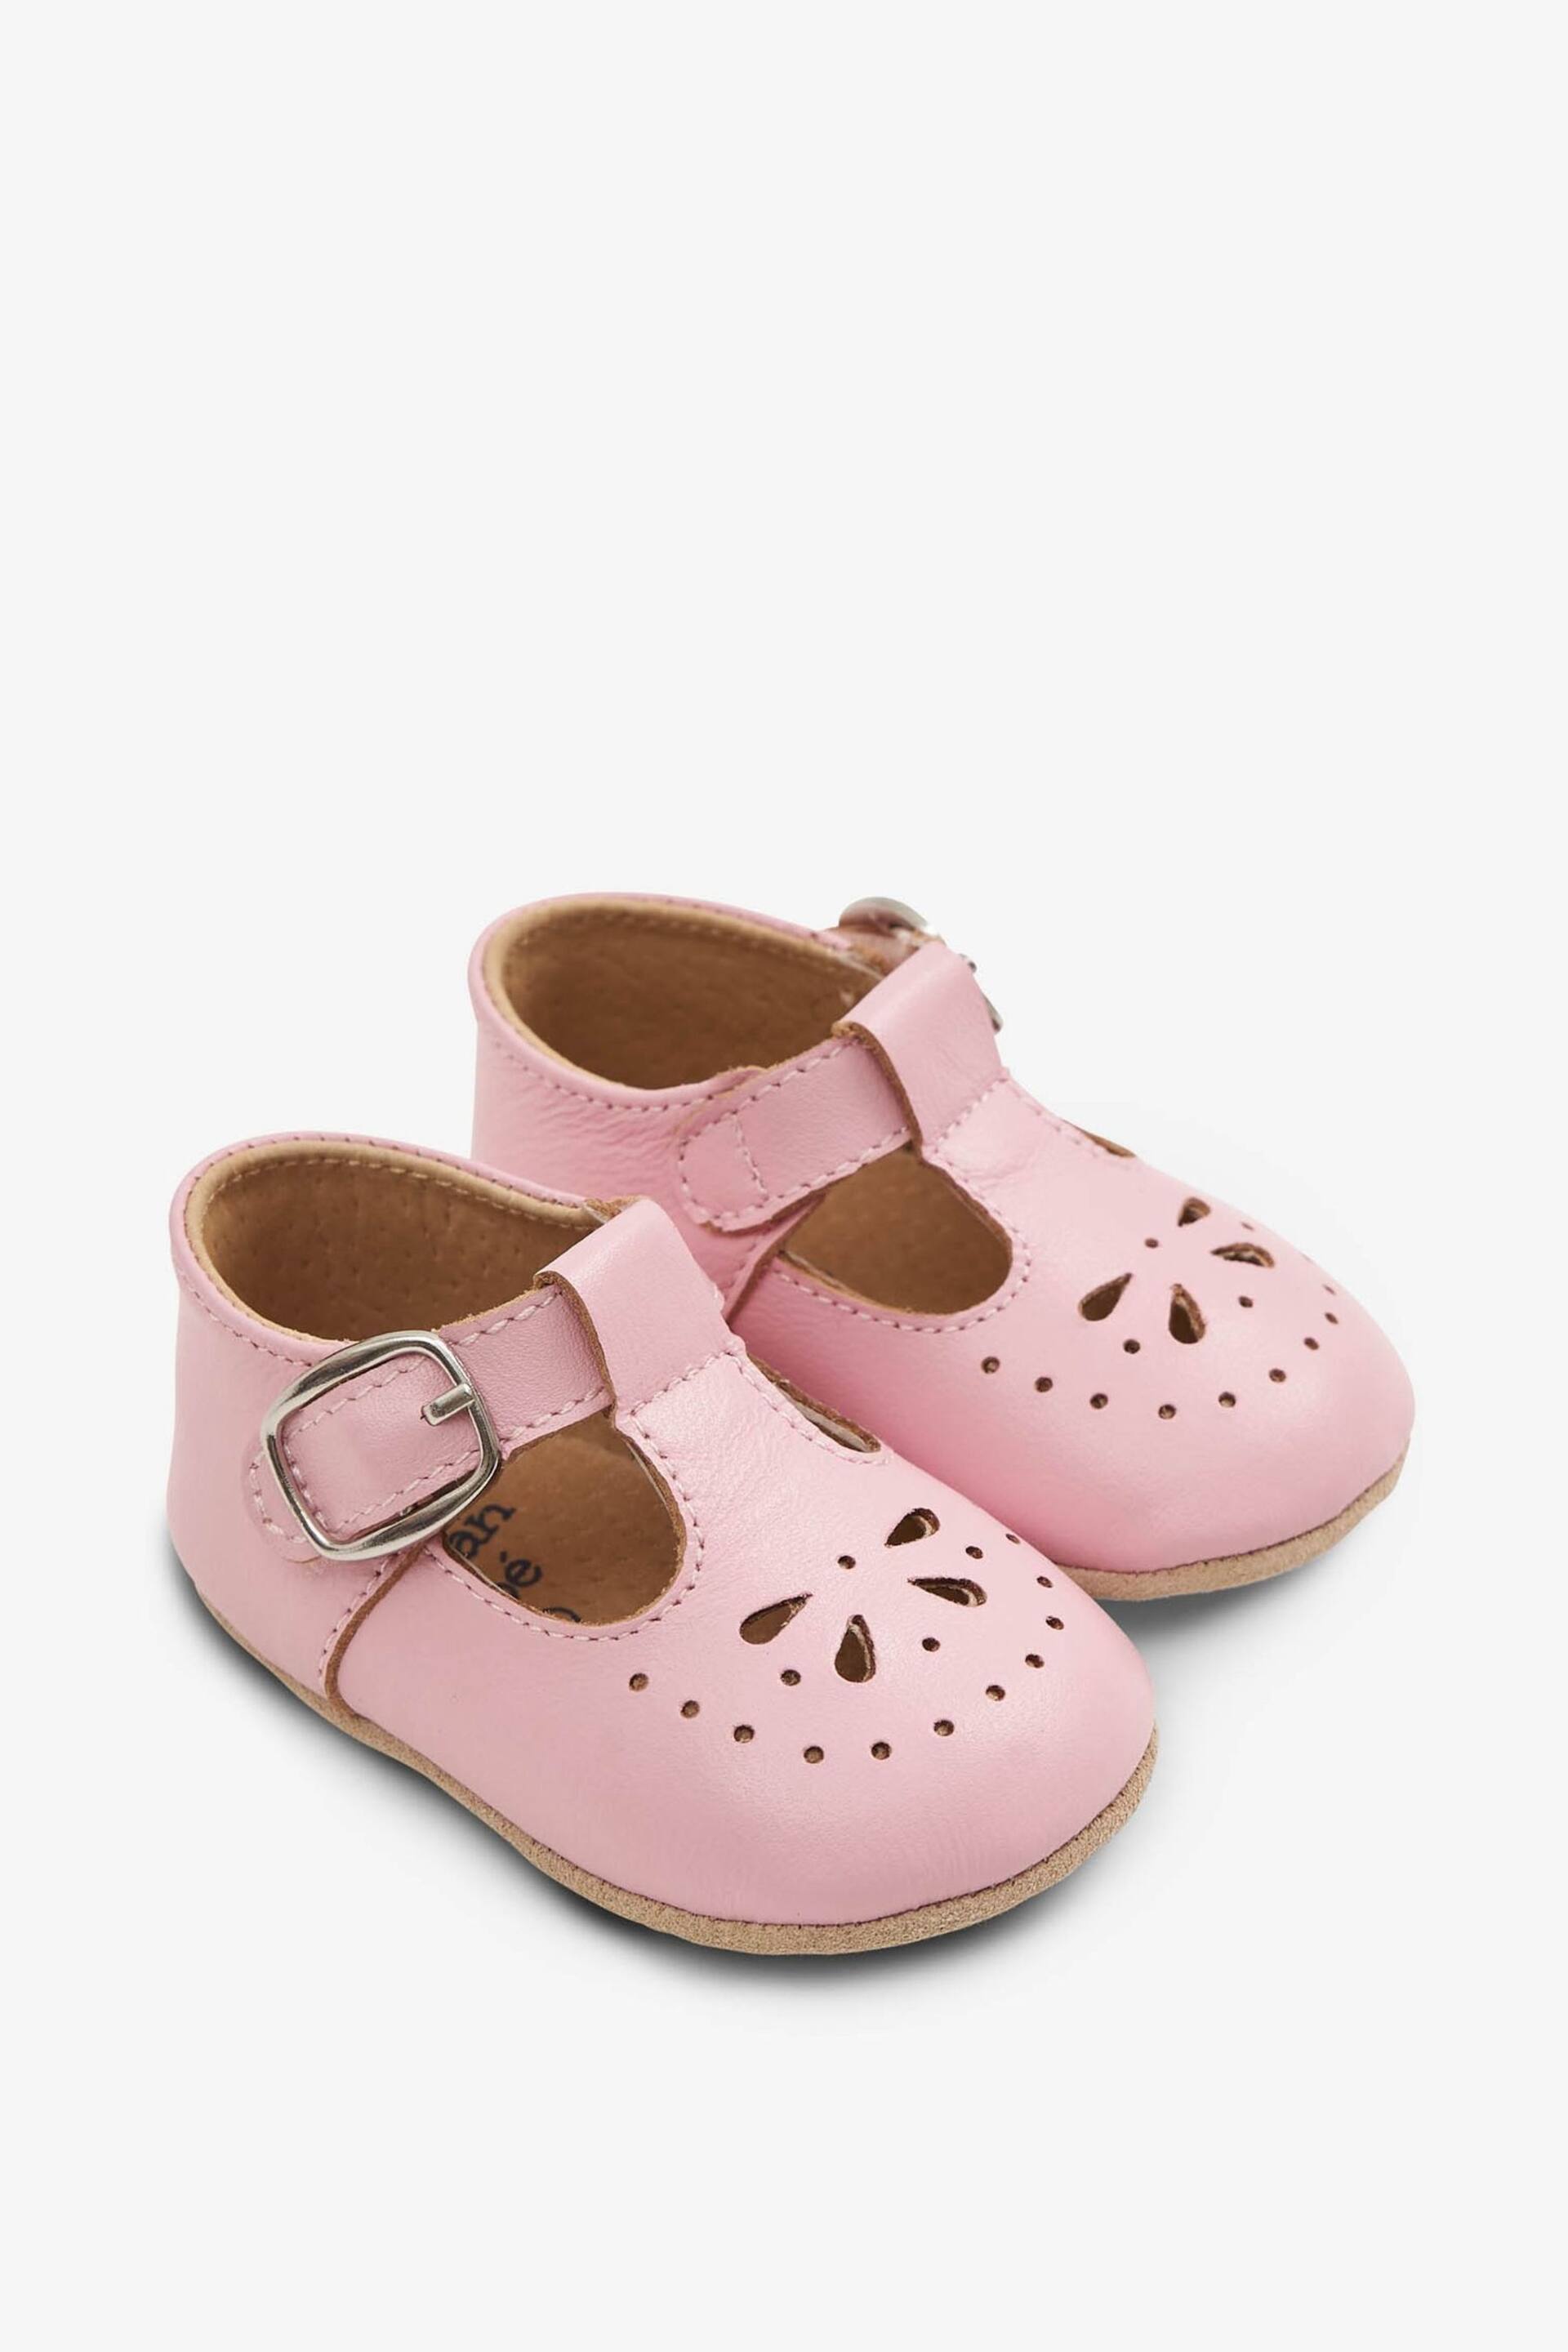 JoJo Maman Bébé Pink Classic Leather Pre-Walker Shoes - Image 1 of 4